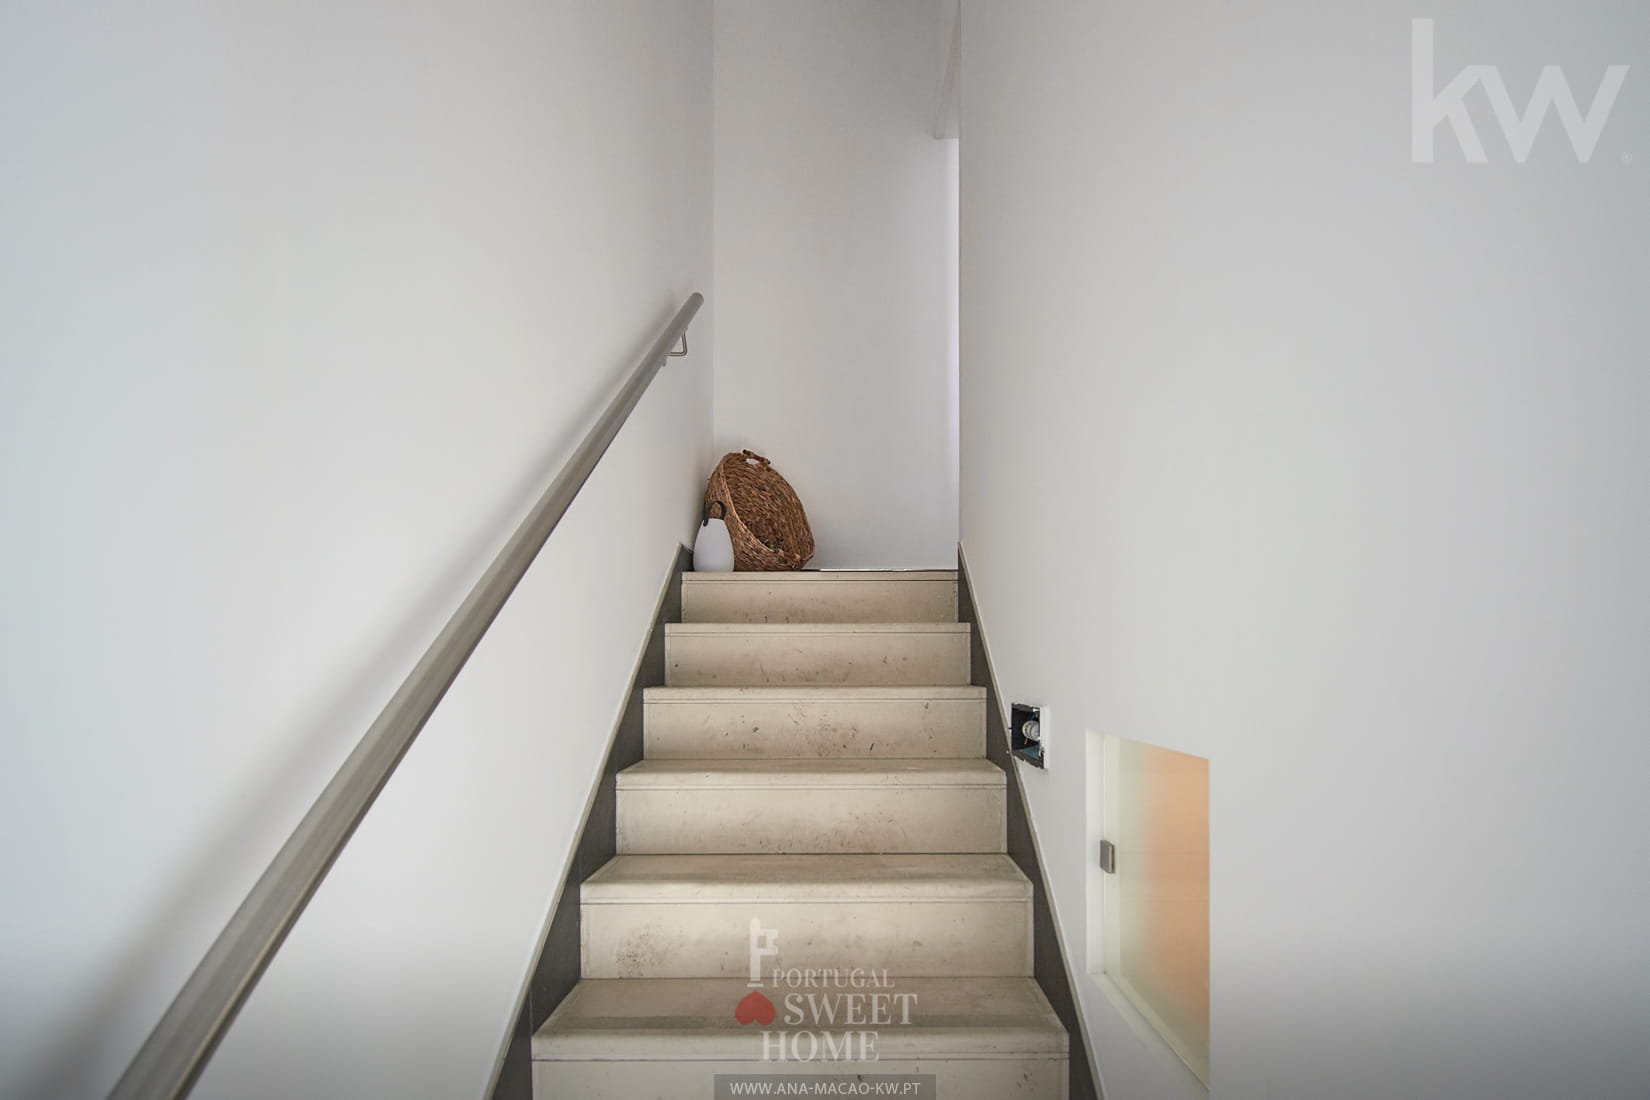 Stairway to floor 1